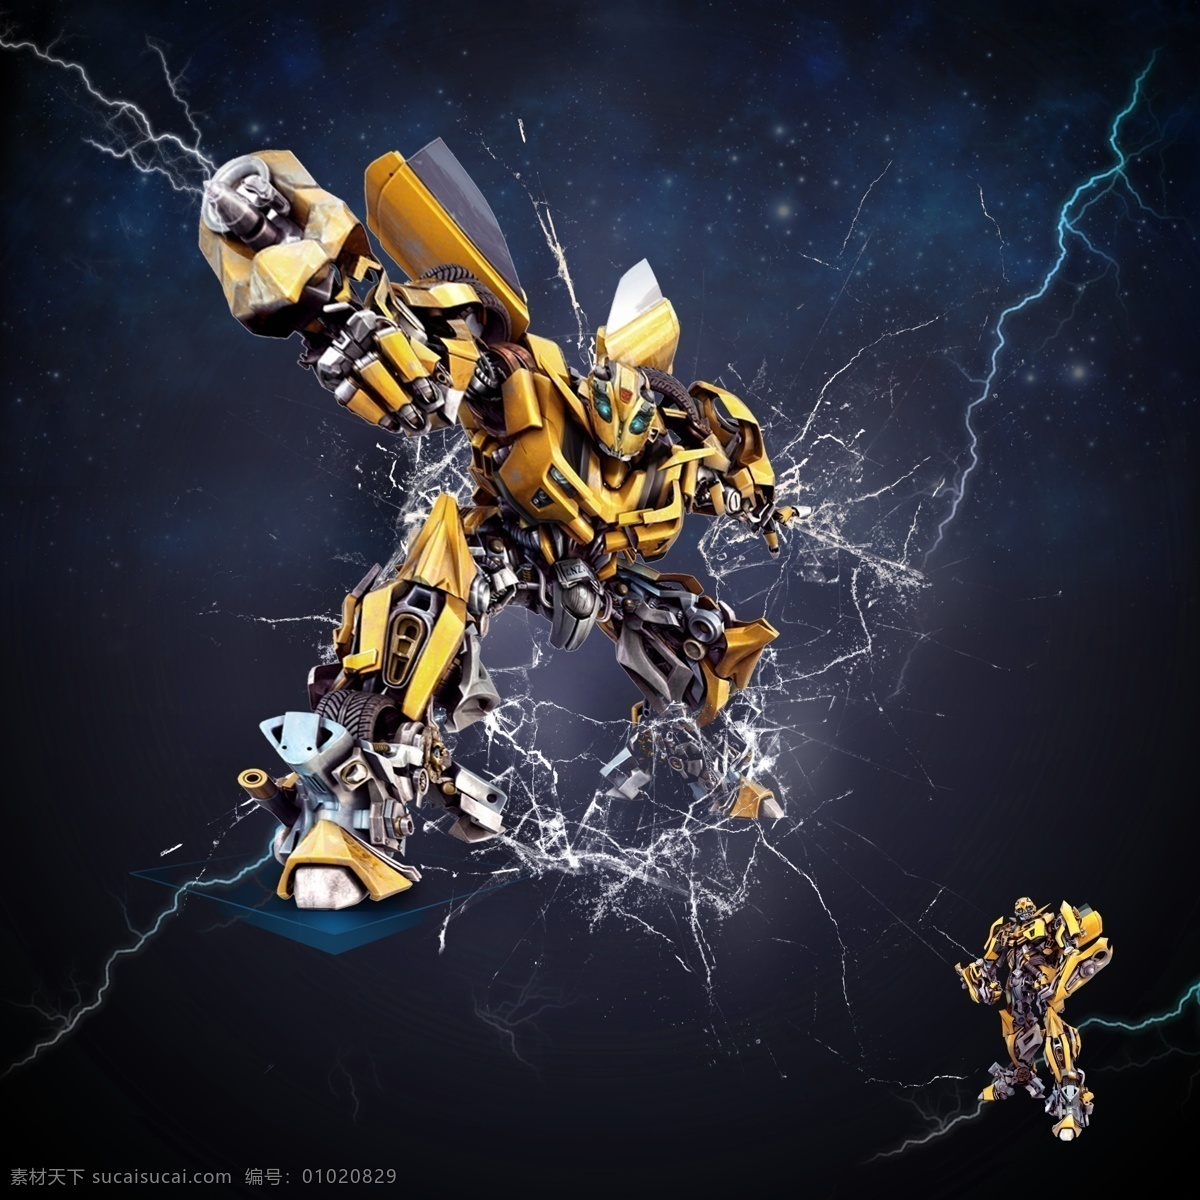 大黄蜂 变形金刚 机器人 闪电 星空 碎玻璃 psd分层 大黄蜂素材 机器人素材 分层 源文件